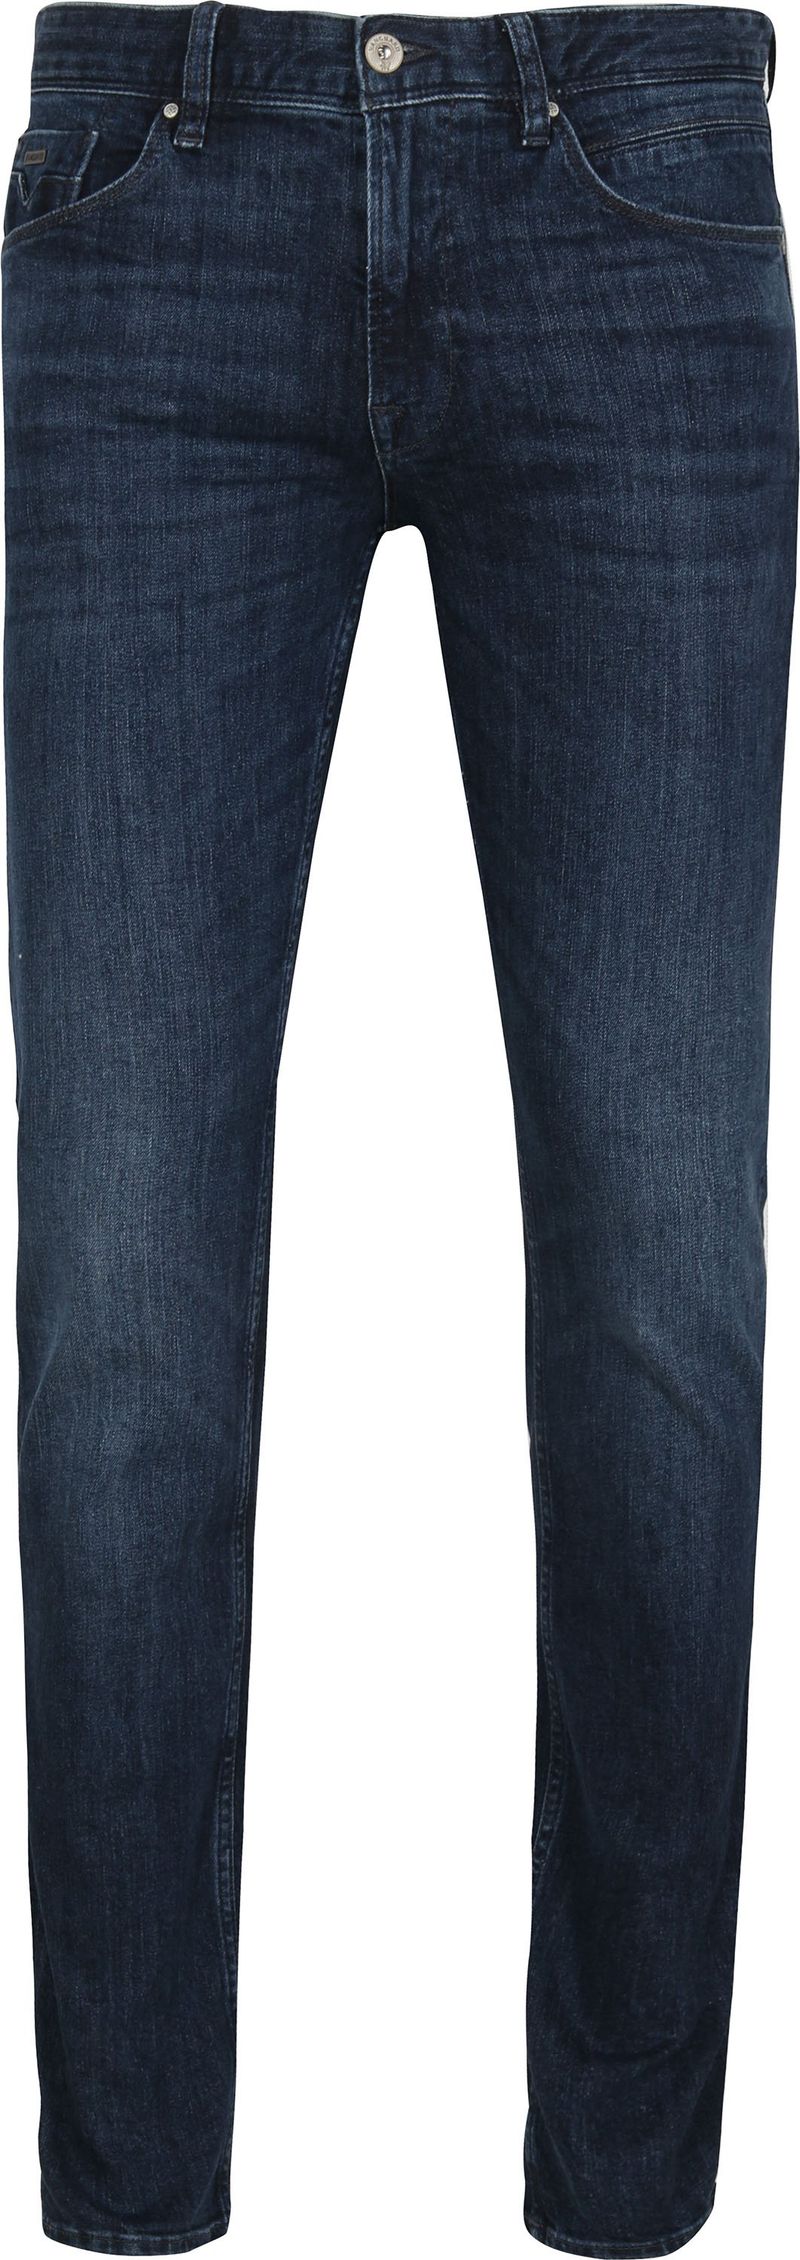 Vanguard Jeans V7 Rider Steel Washed Blau - Größe W 31 - L 34 günstig online kaufen